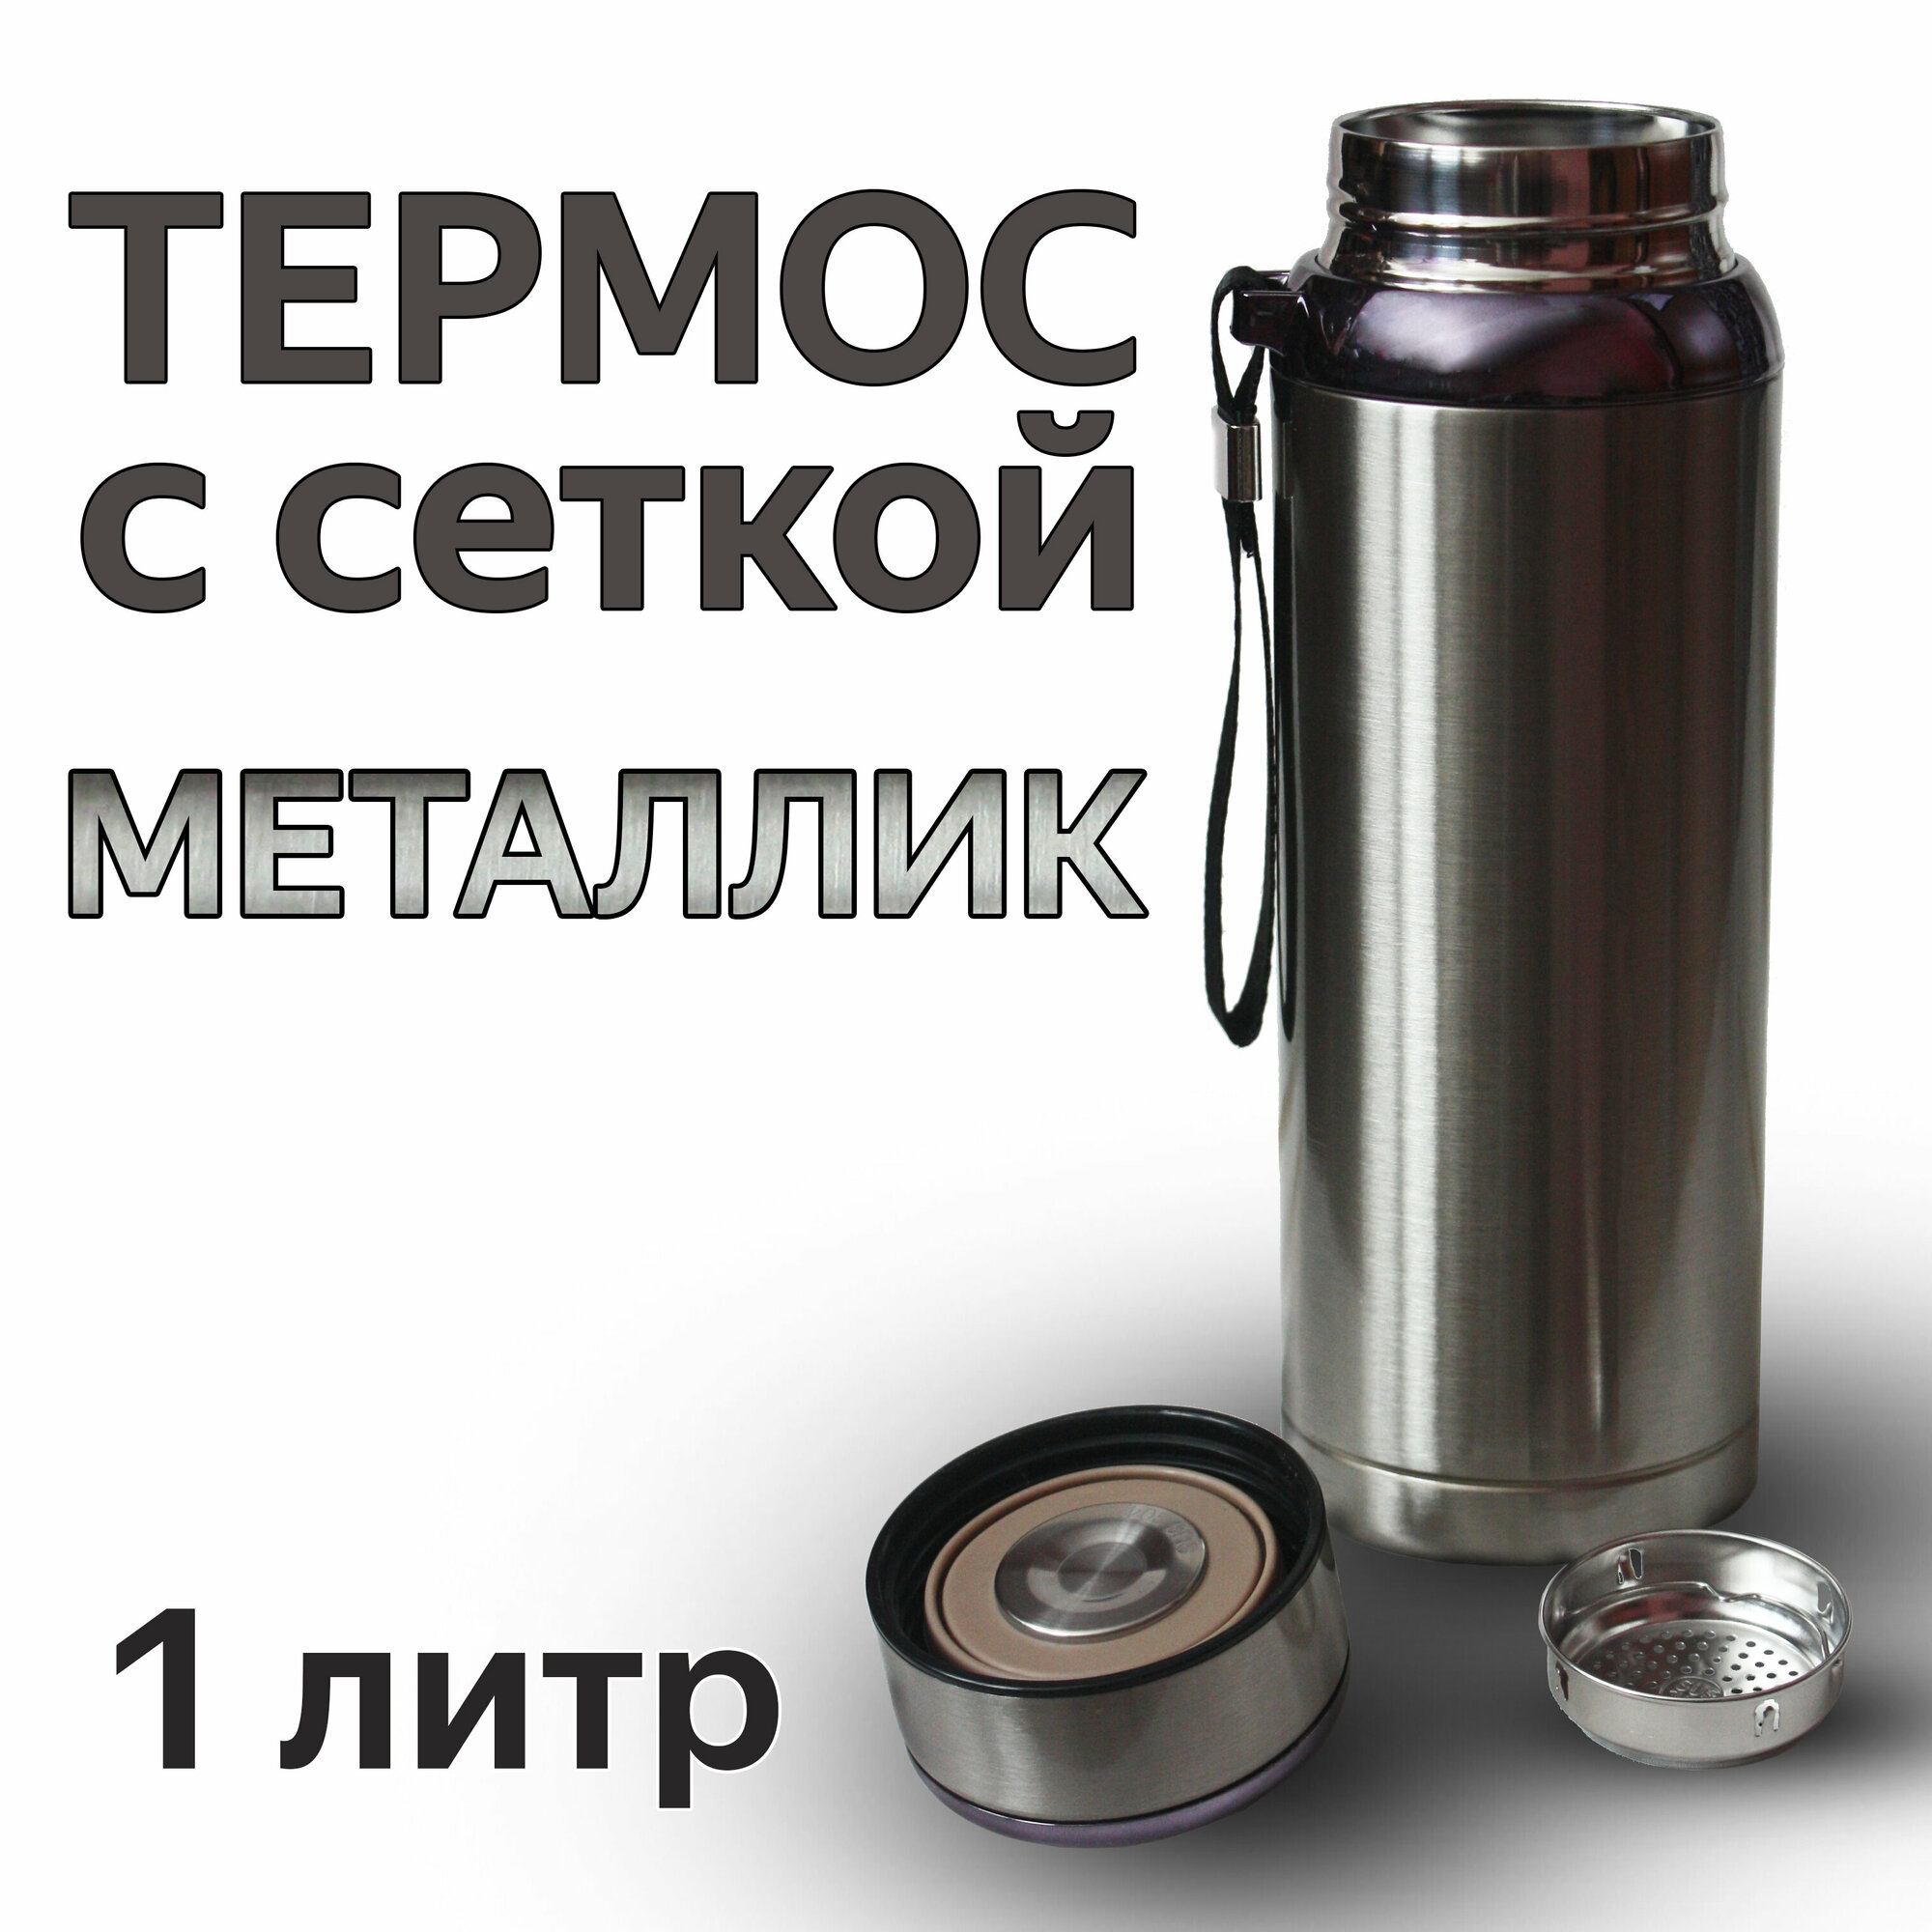 Термос для напитков из нержавеющей стали со съемной сеткой-фильтром 1 литр VACUUM цвет металлик